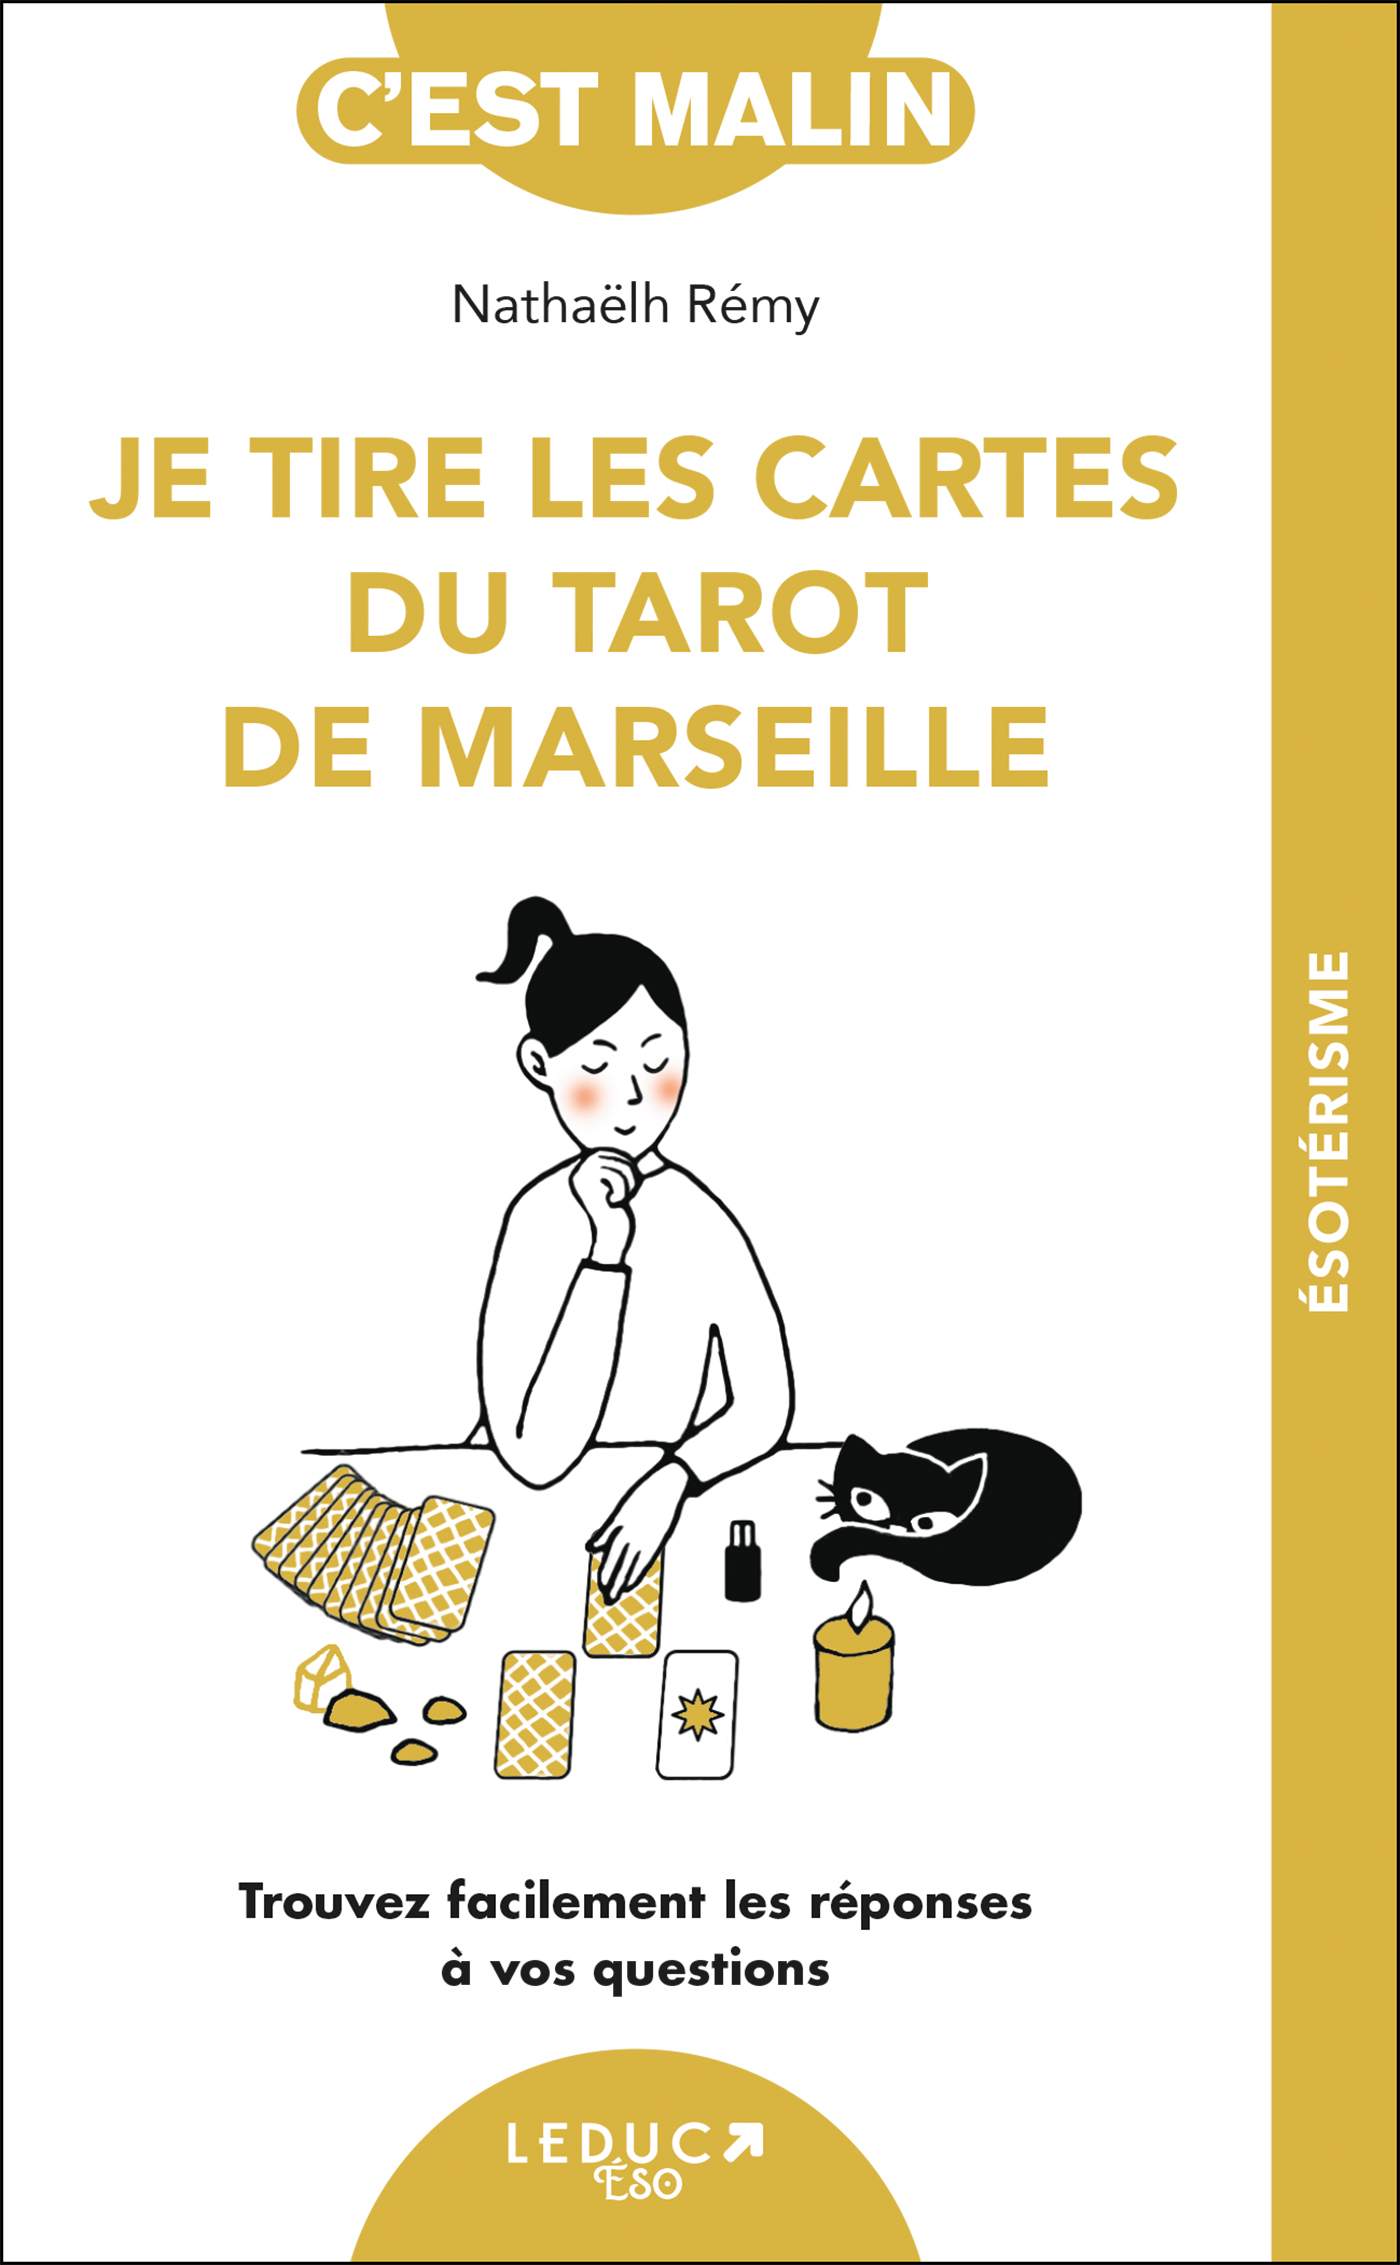 Tarot De Marseille, Tarot Divinatoire avec Livret et E-Book